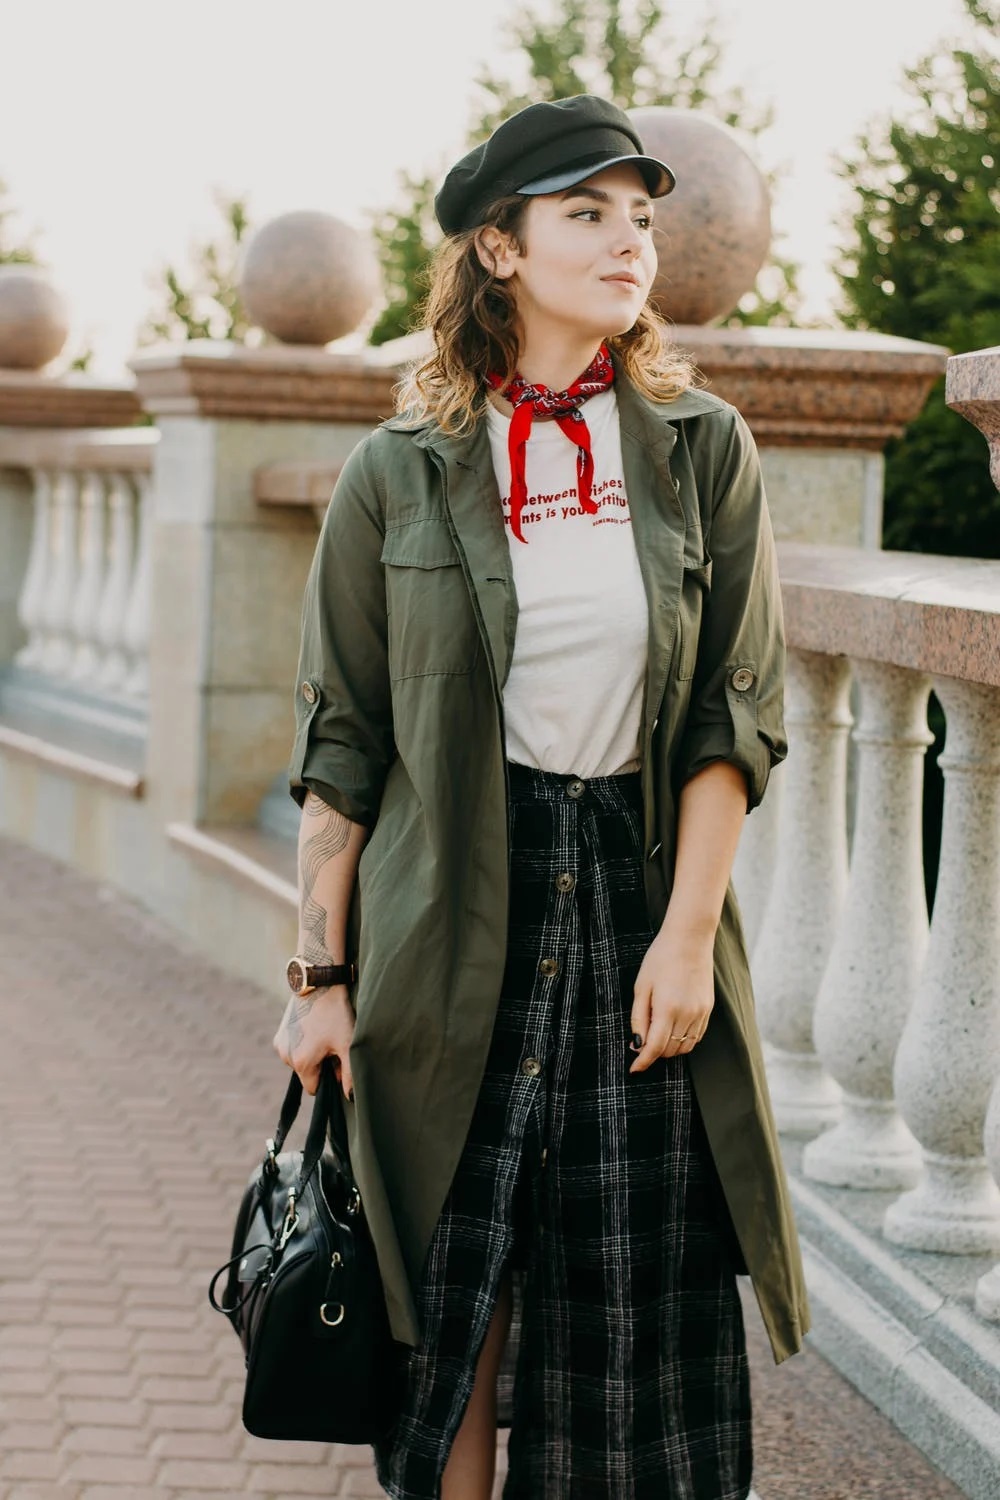 visuel jeune femme de style hippie chic portant un sac à main cuir